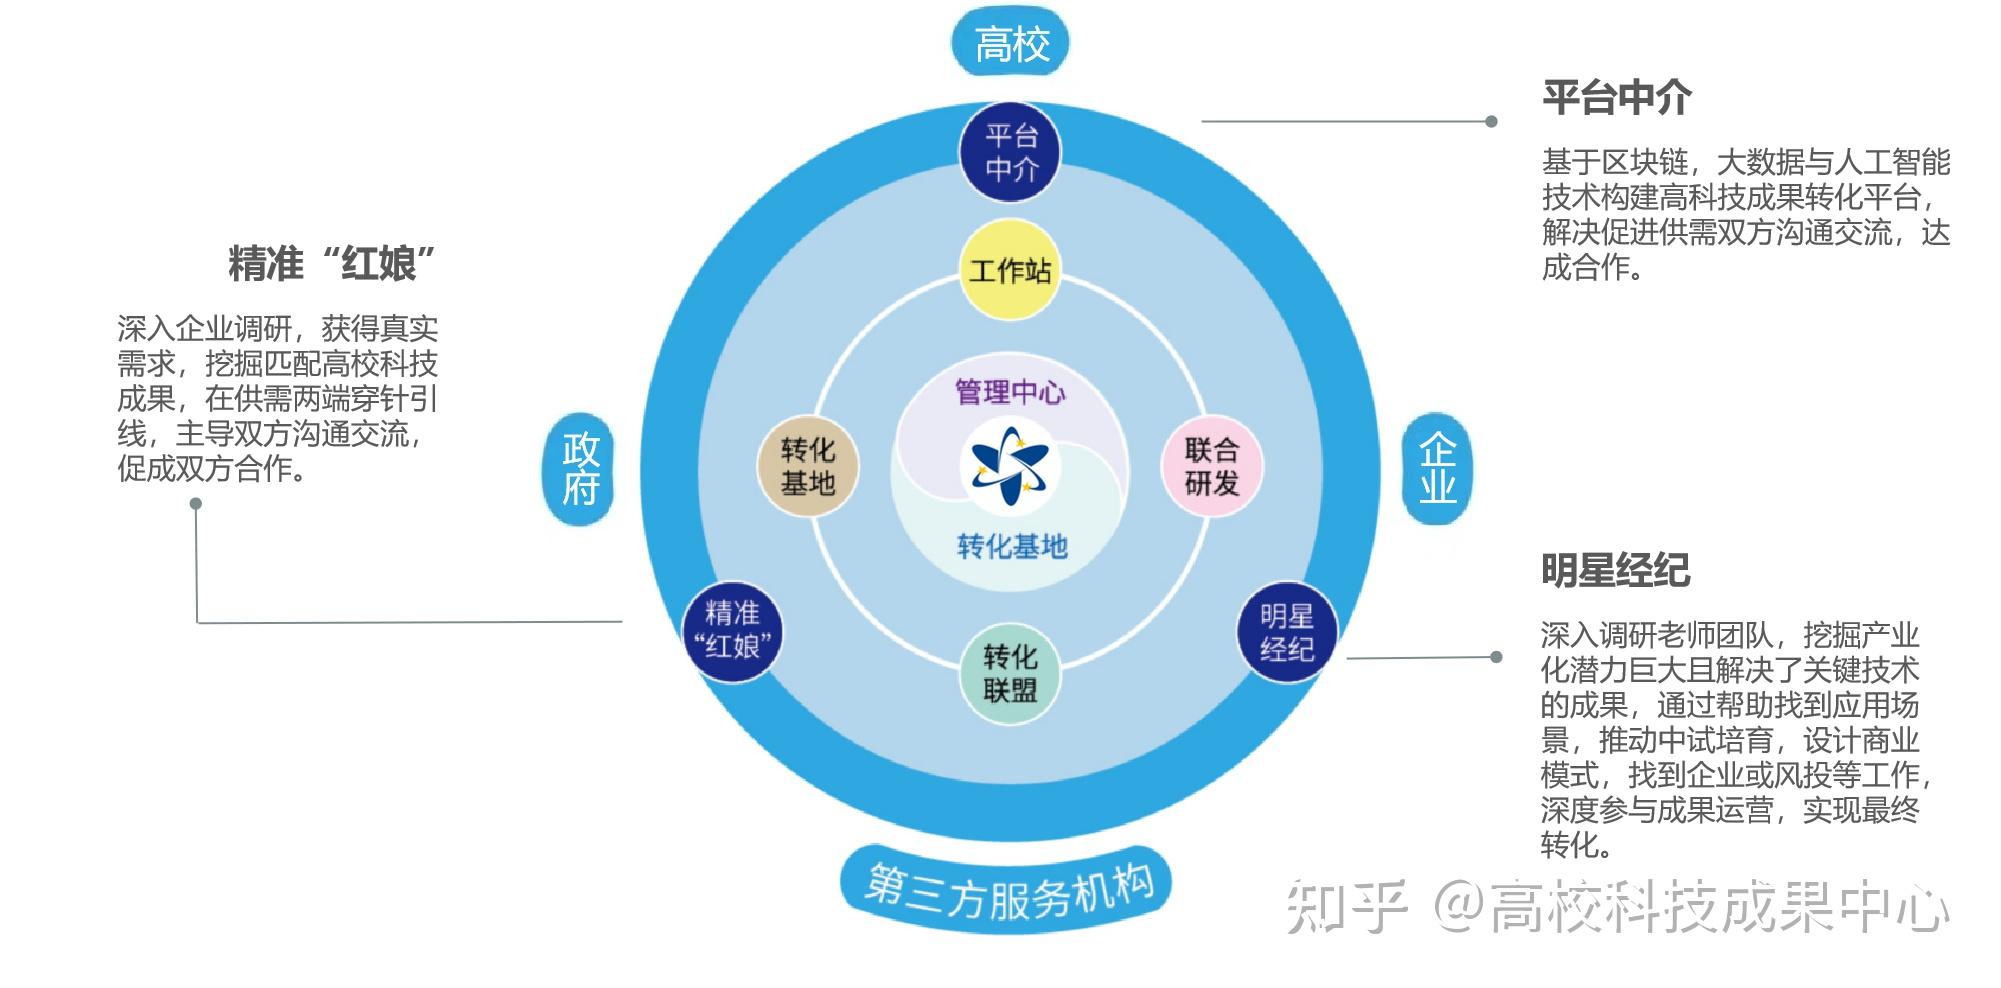 广东高校科技成果转化中心是怎样的单位? 